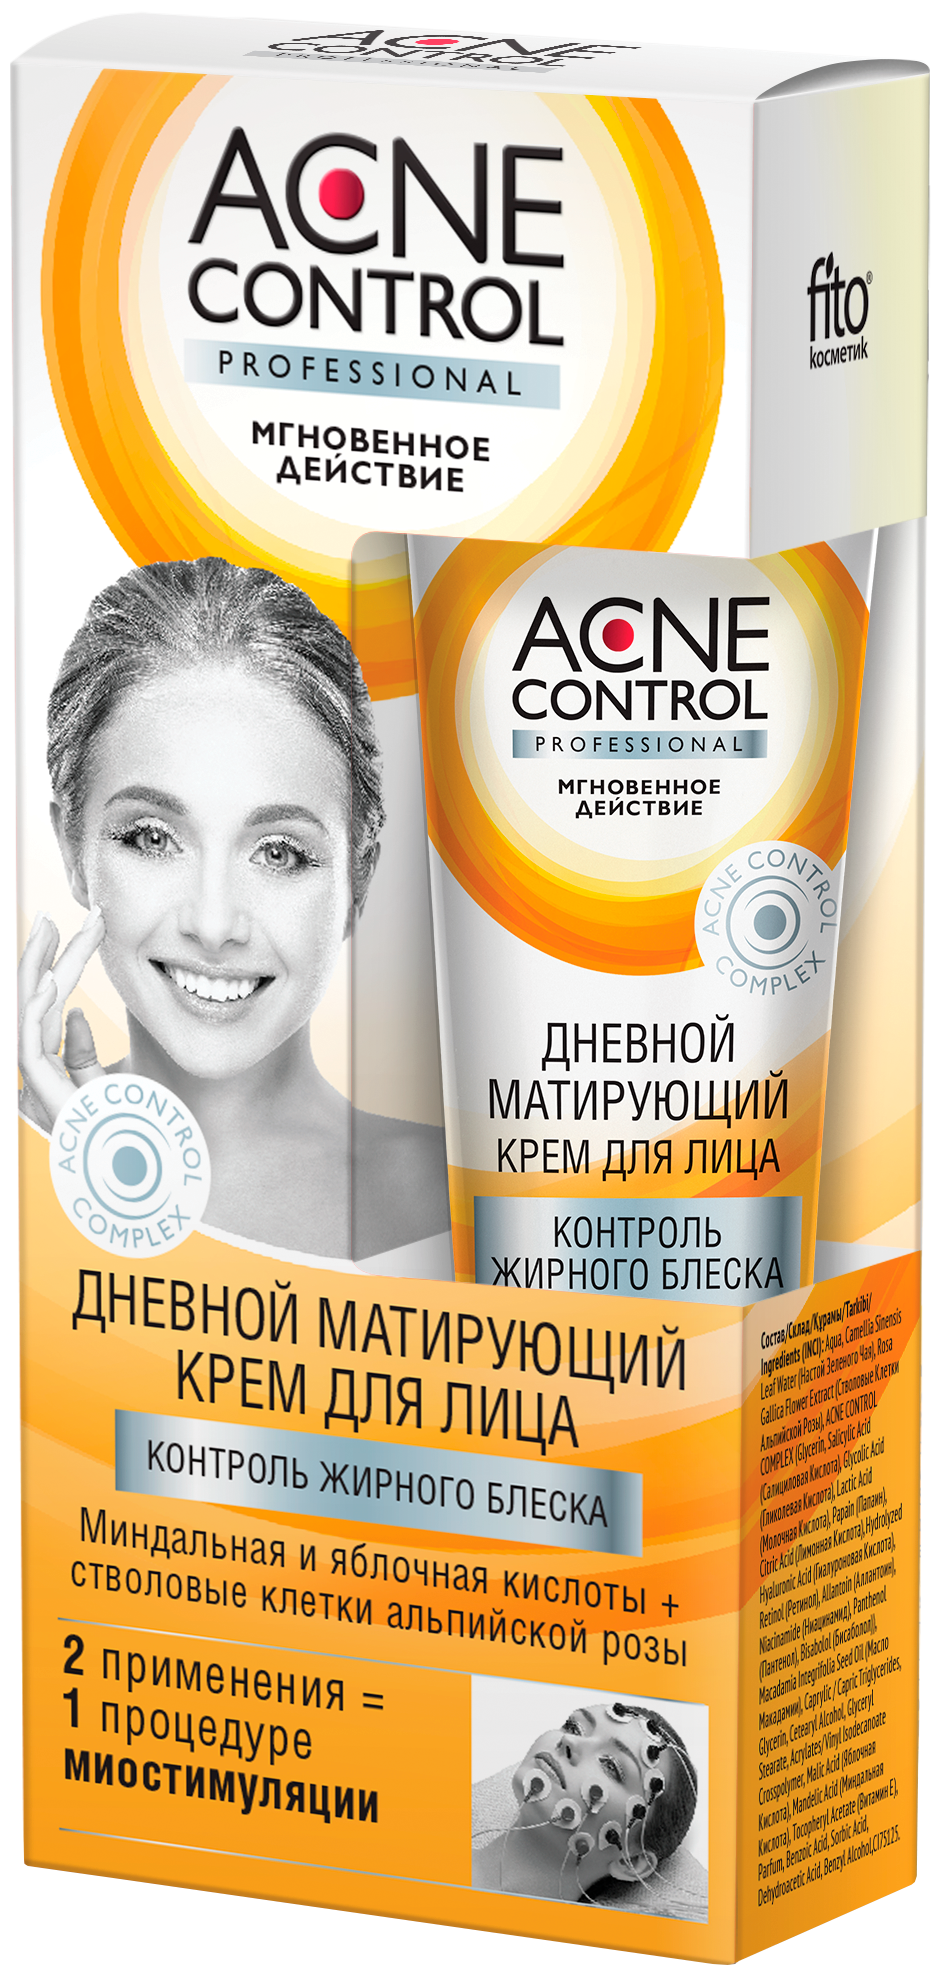 Acne Control Крем для лица дневной матирующий Контроль жирного блеска, 45 мл